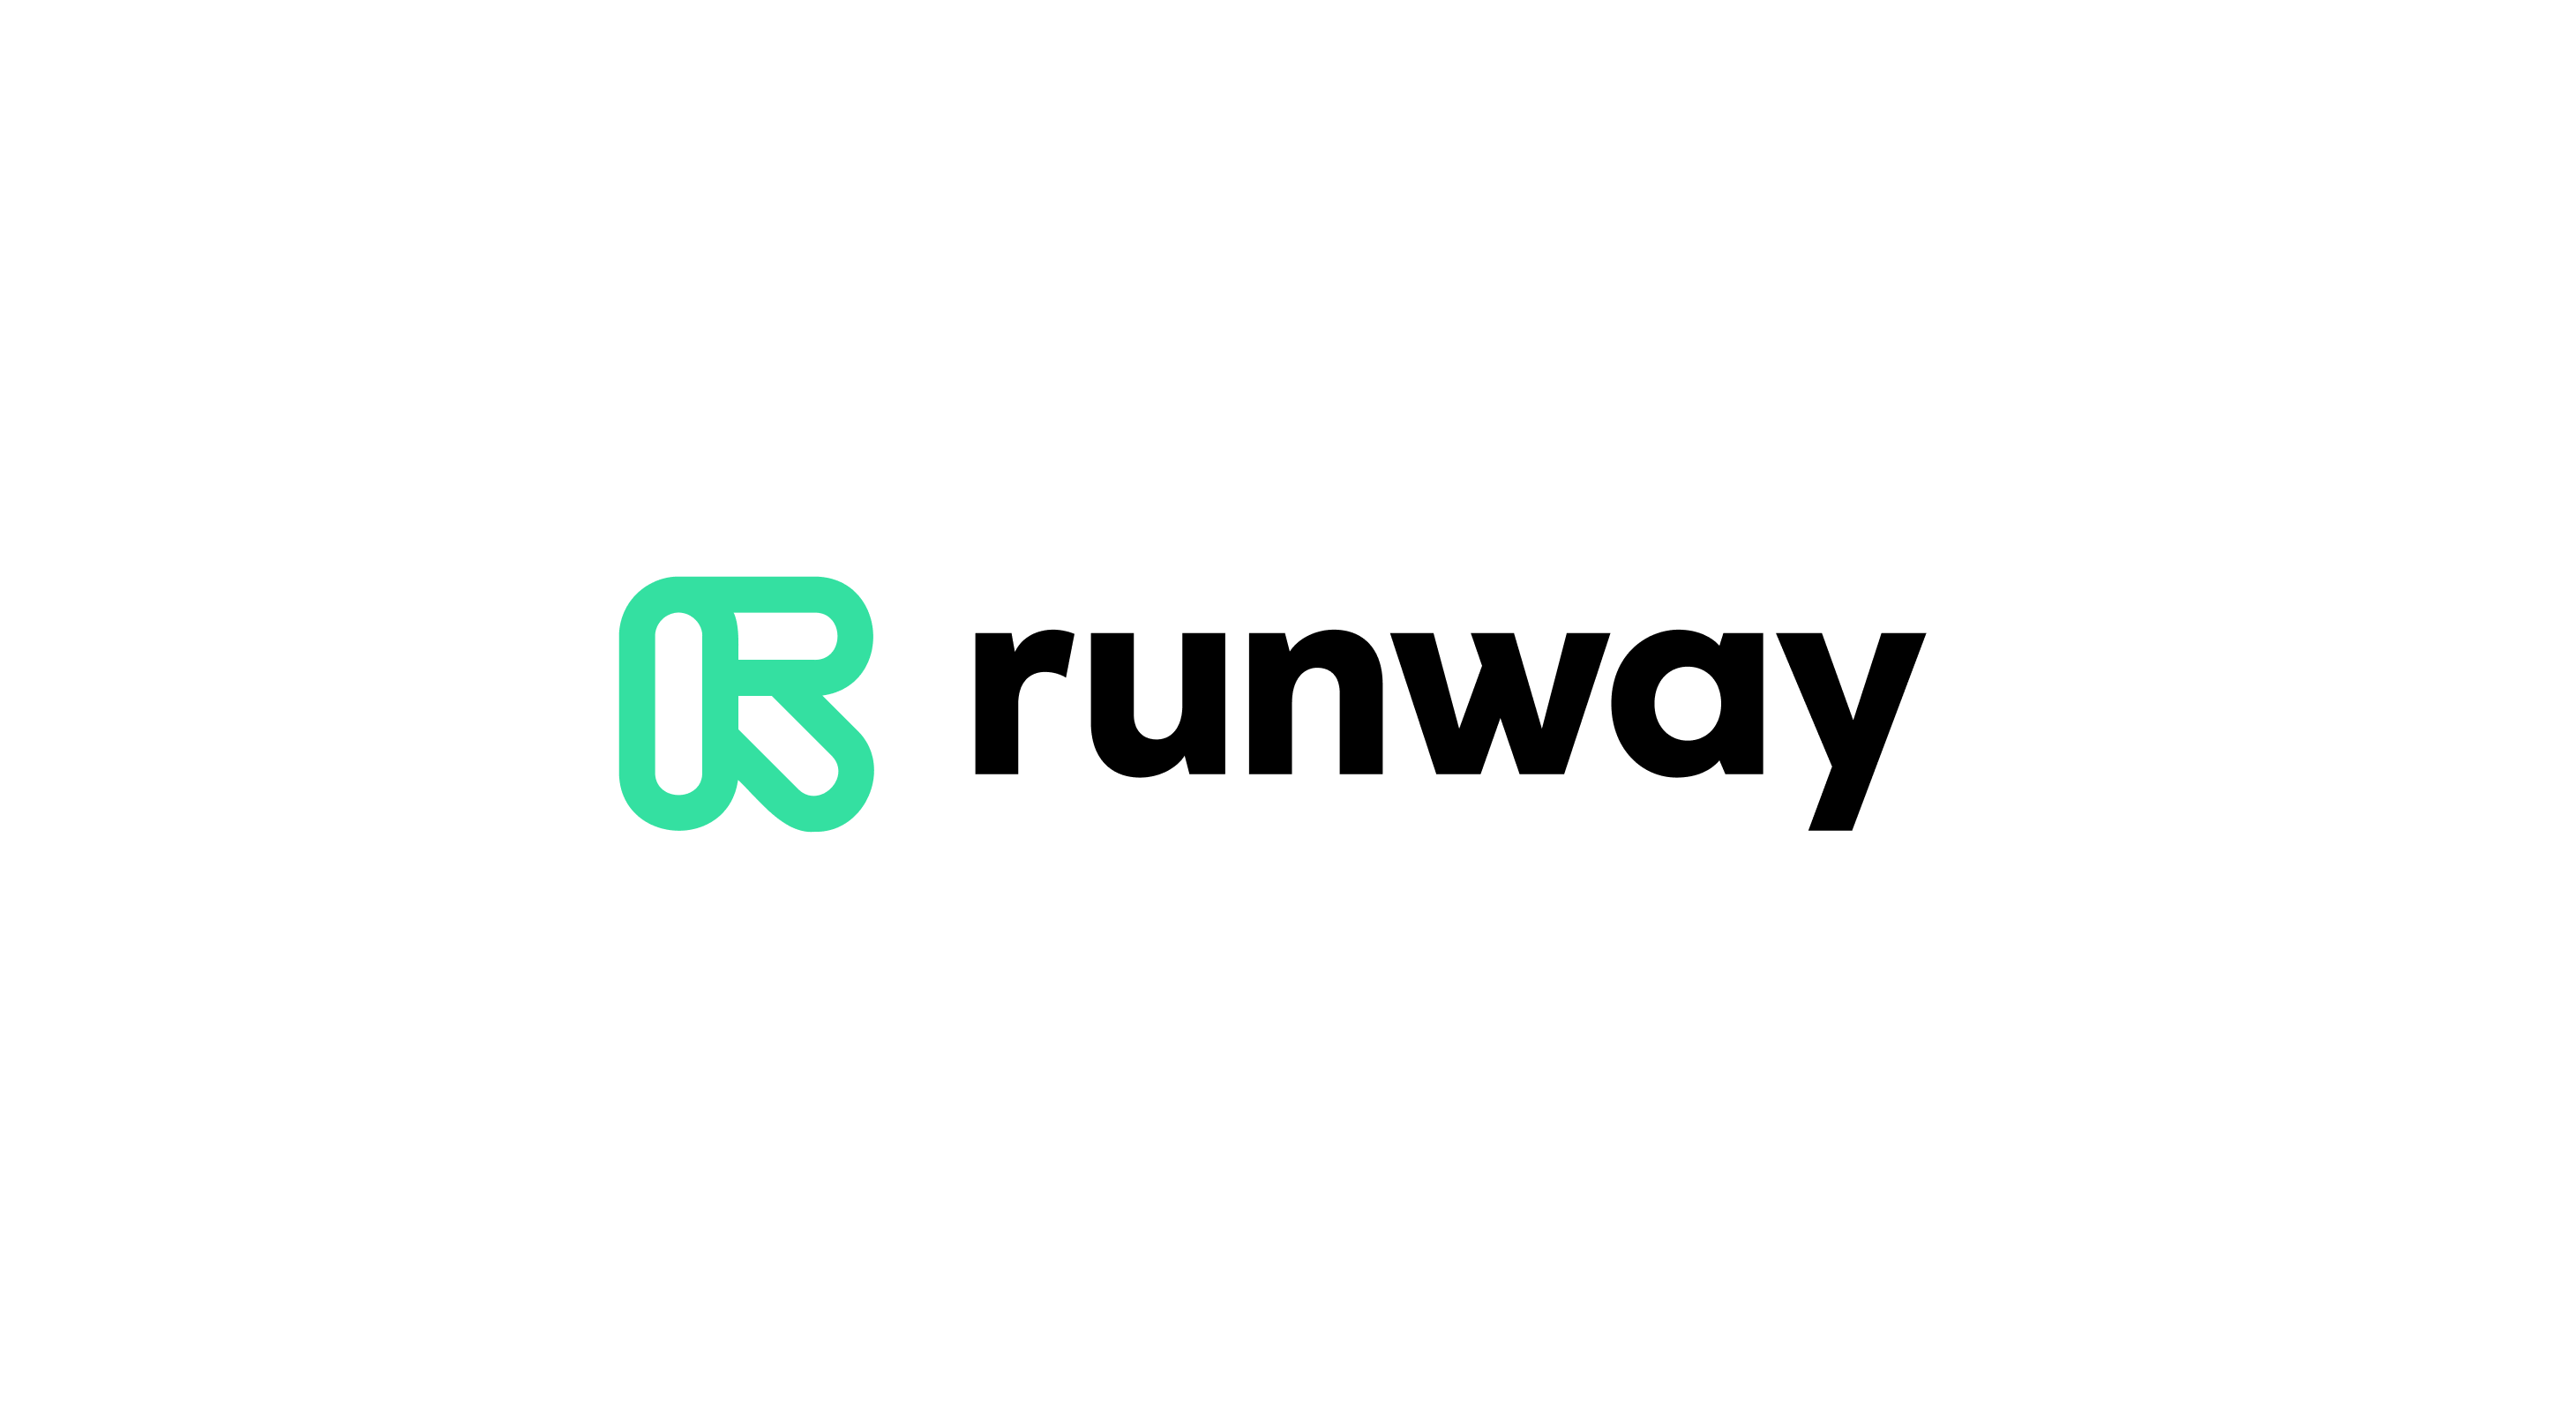 Runway lanza un modelo de IA capaz de generar vídeos a partir de texto